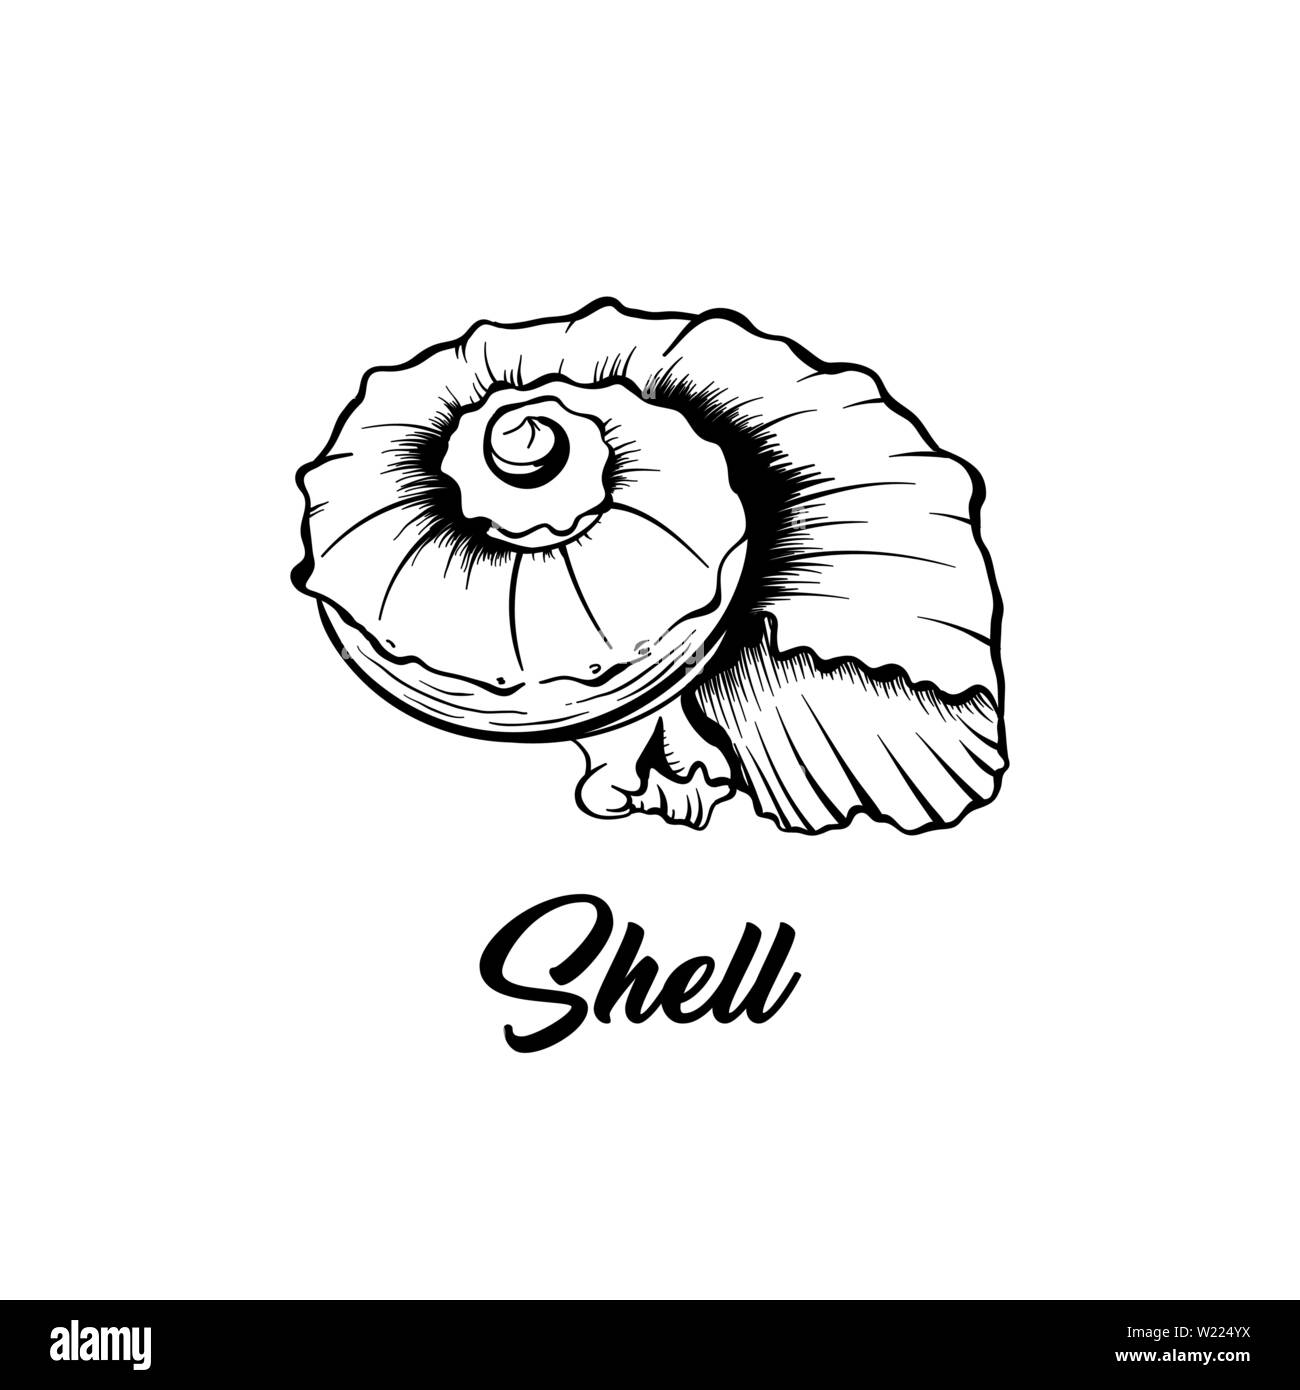 Sea Shell noir et blanc illustration vectorielle. Forme de spirale créature nautique dessin libre. Mollusque exotique animal invertébré marin, la gravure. Vacances d'élément de design de l'affiche Illustration de Vecteur